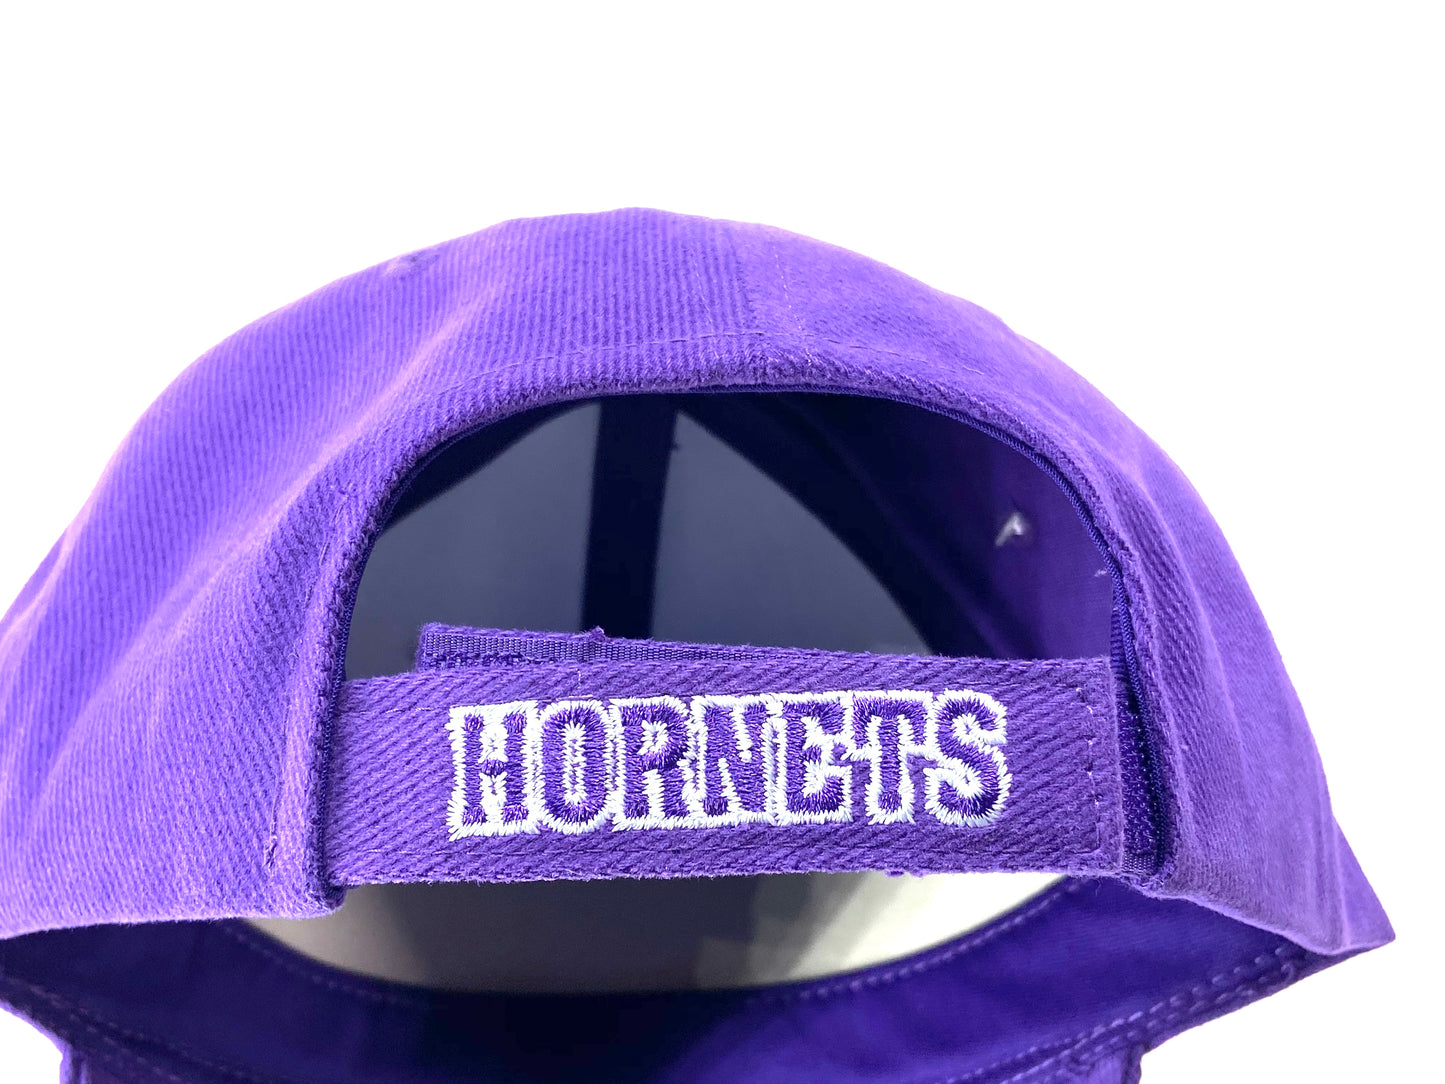 New Orleans Hornets 2007 NBA Purple Cotton Logo Cap